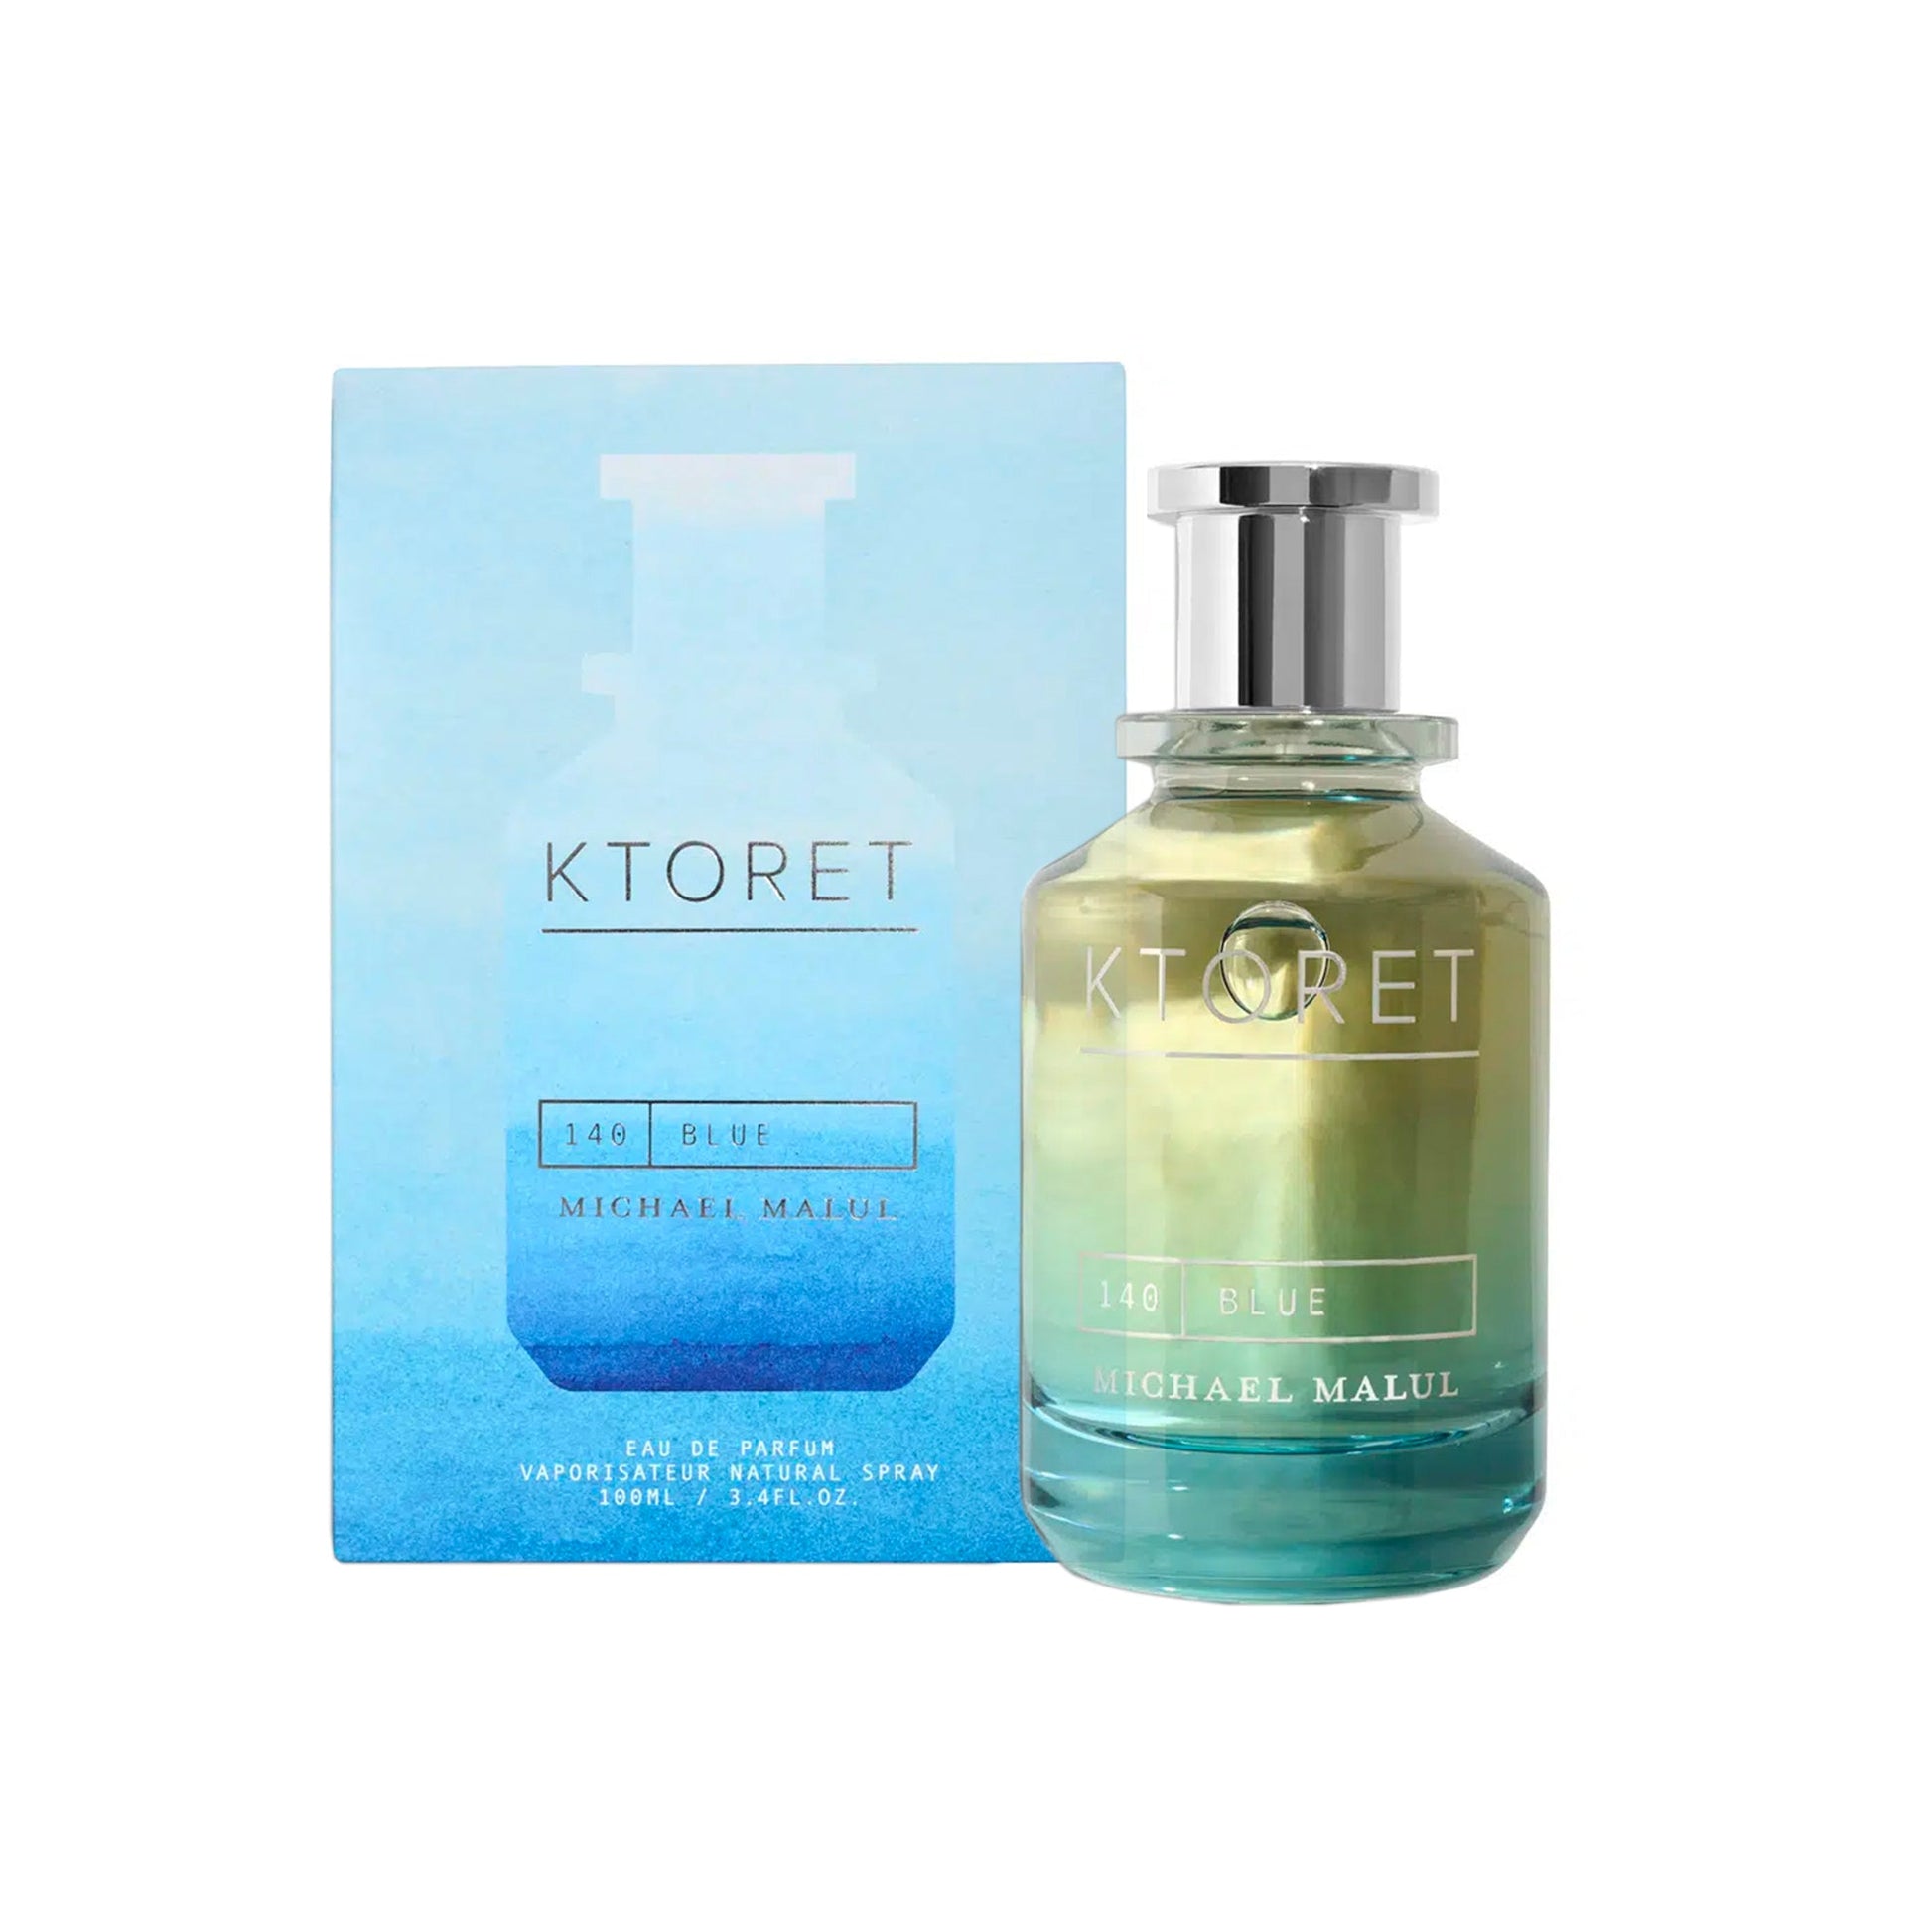 Ktoret 140 Blue Eau de Parfum Spray For Men by Michael Malul, Product image 1